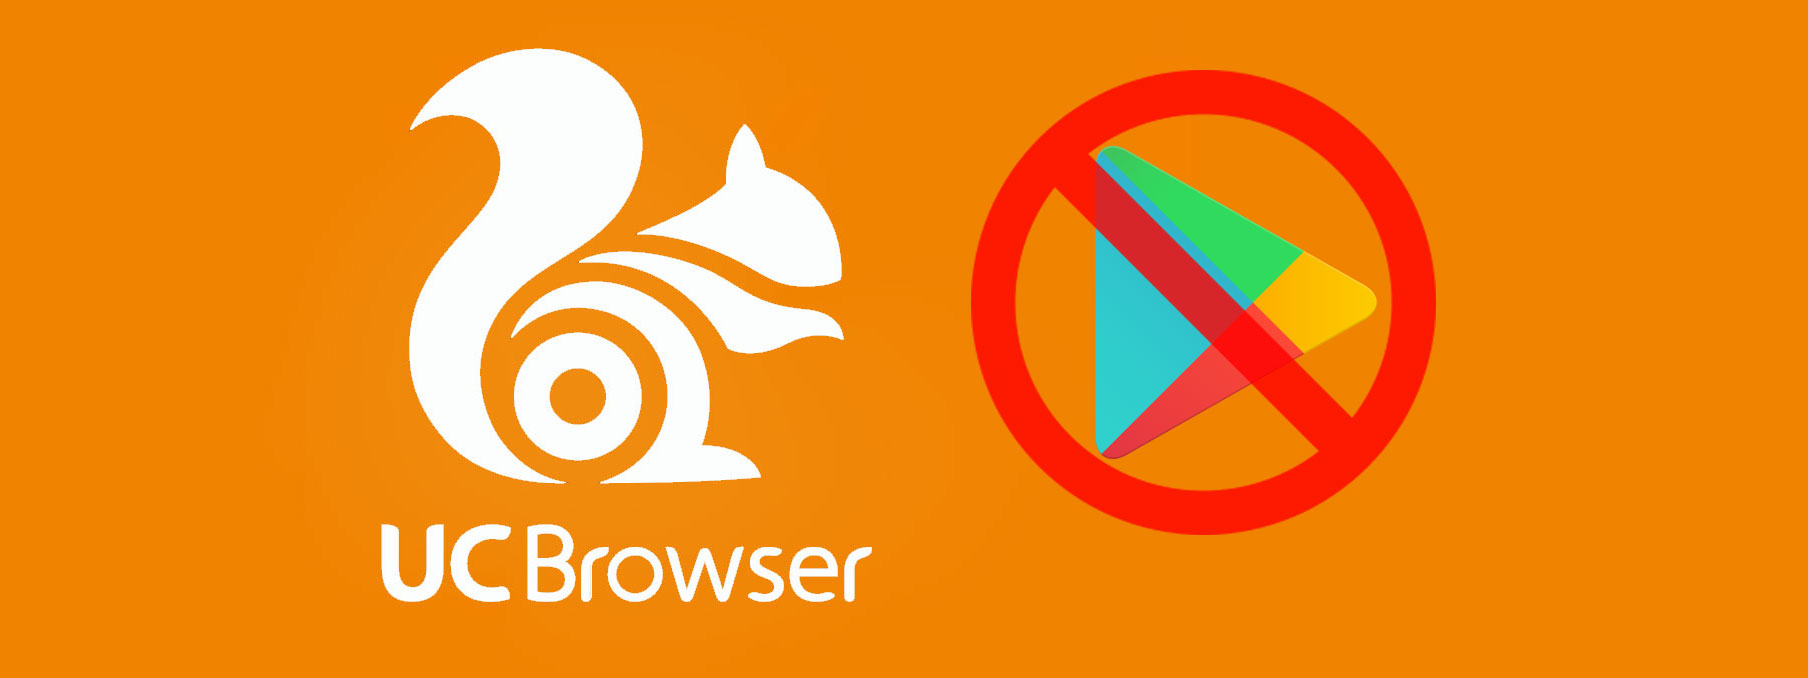 UC Browser bất ngờ biến mất khỏi Play Store, bị gỡ vì quảng cáo tăng lượt download không lành mạnh?